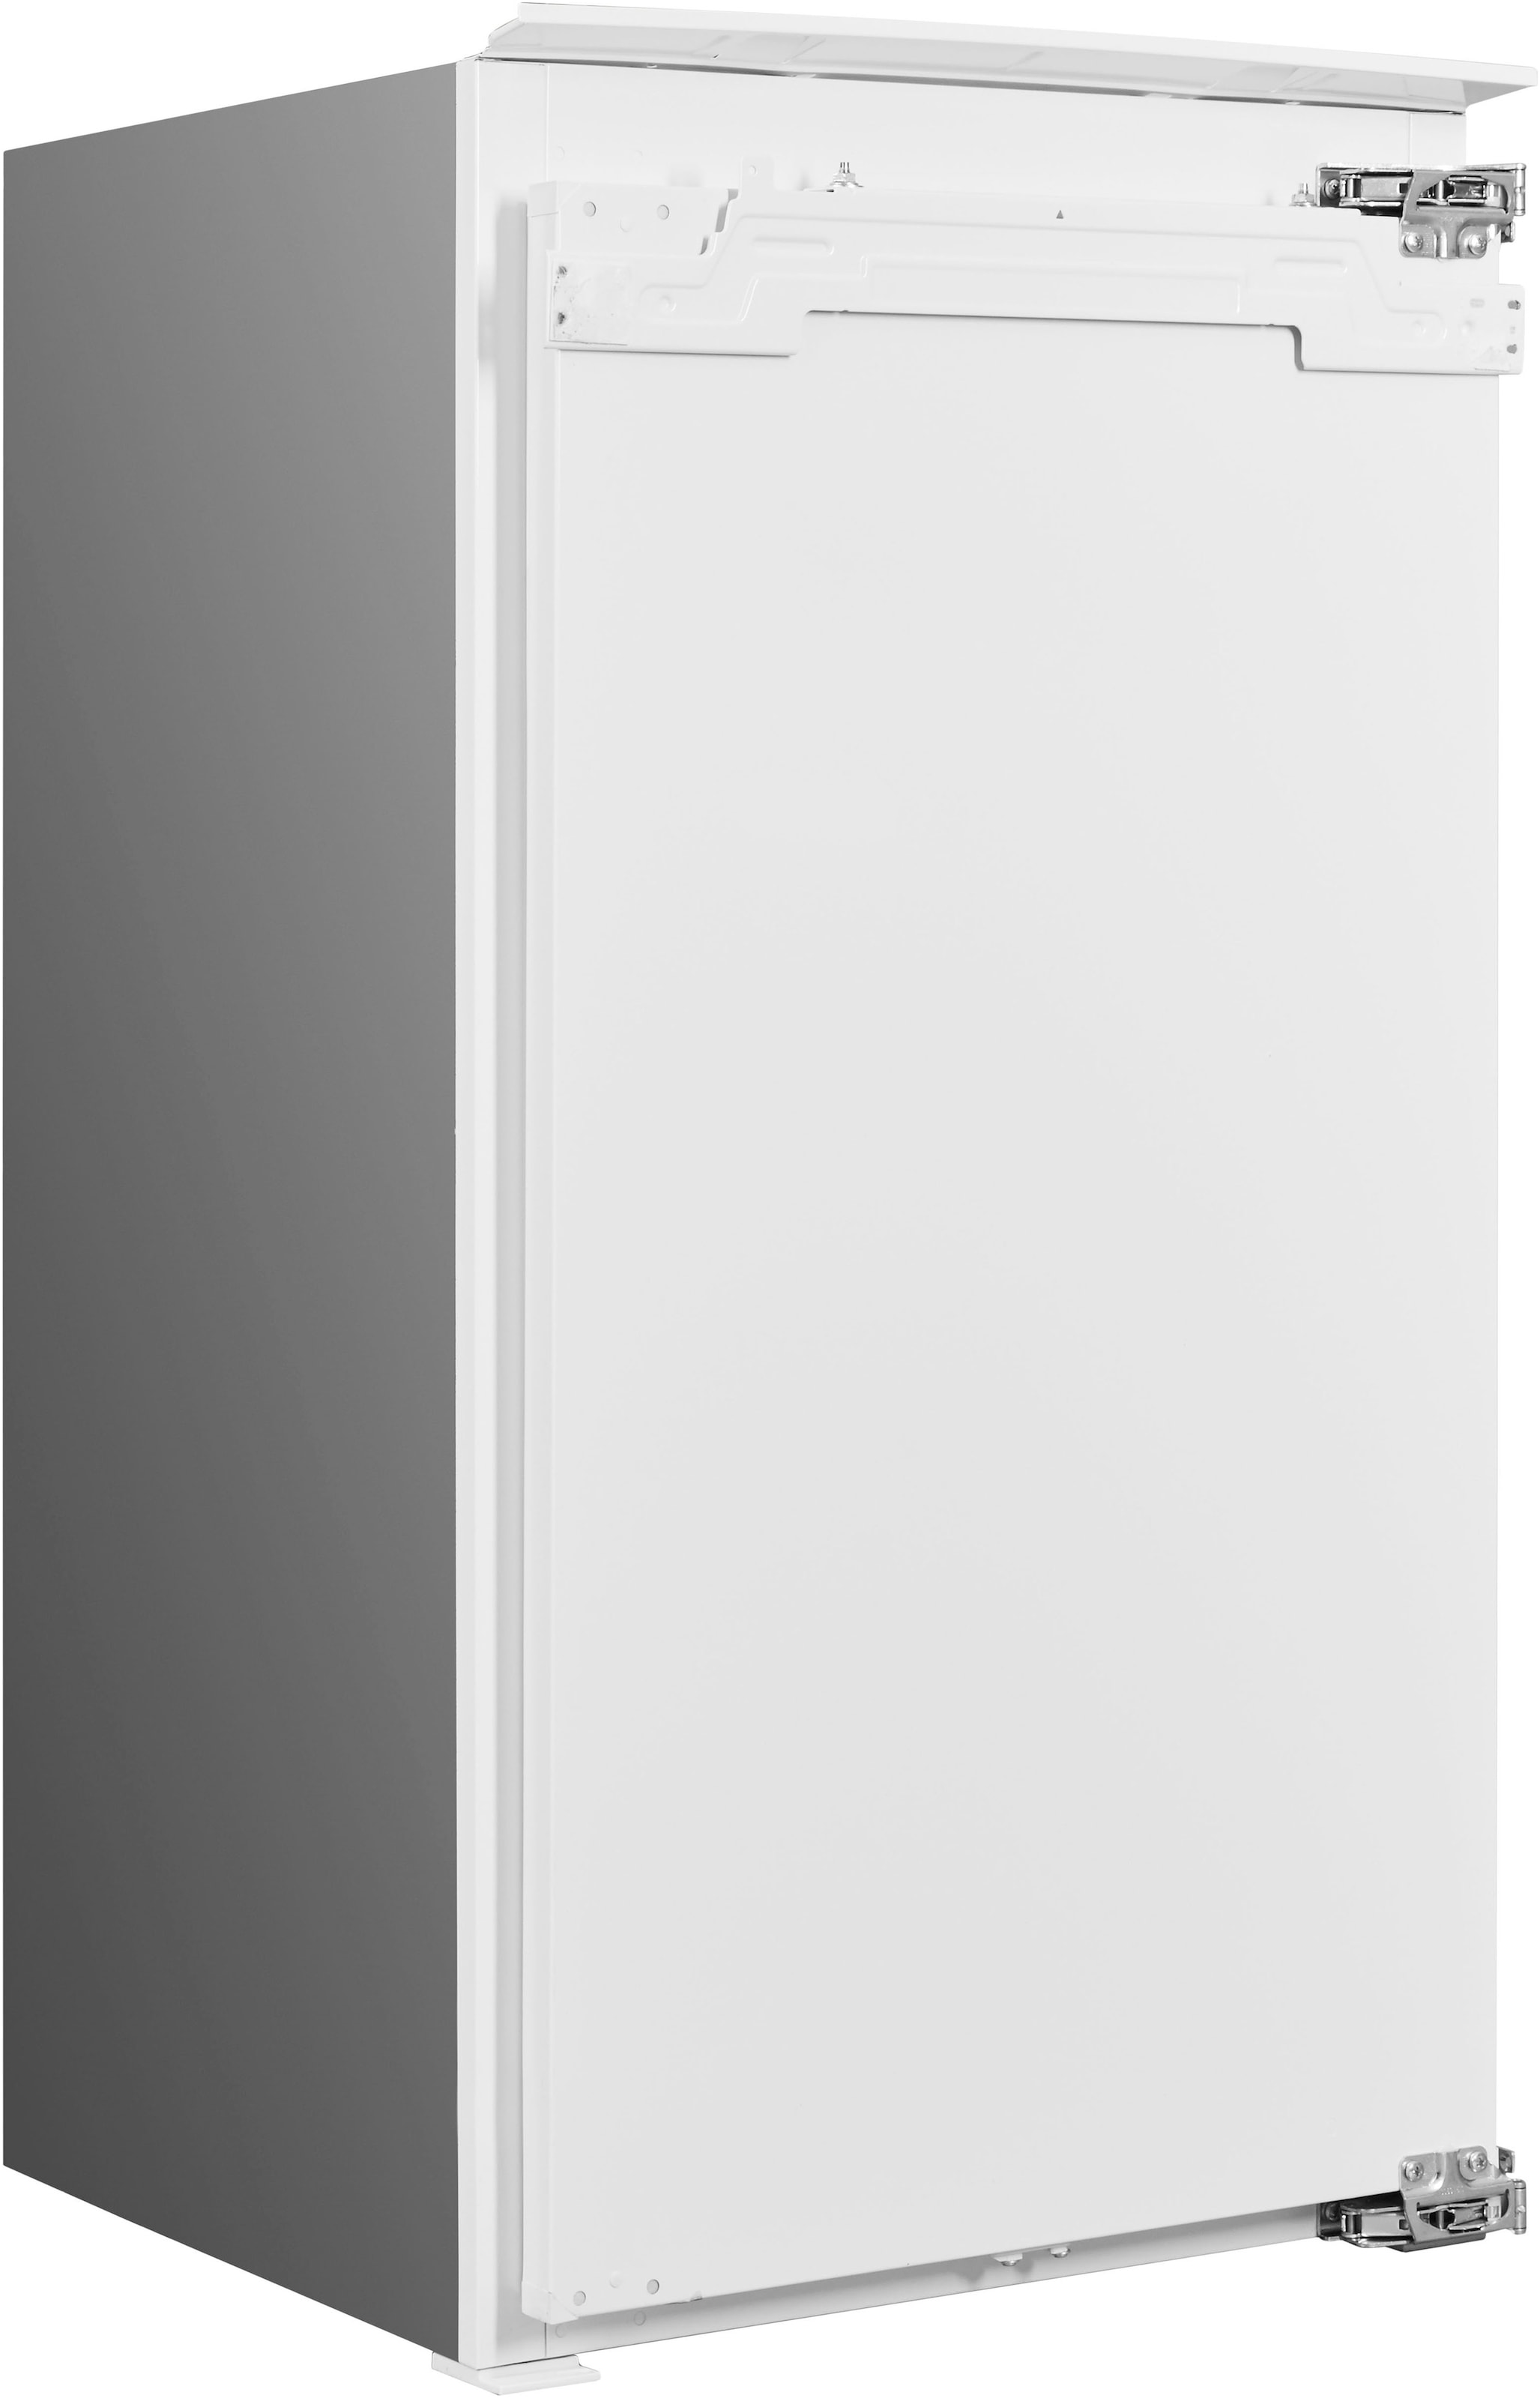 BAUKNECHT Einbaukühlschrank »KSI 10GF3«, KSI 10GF3, 102 cm hoch, 55,7 cm breit